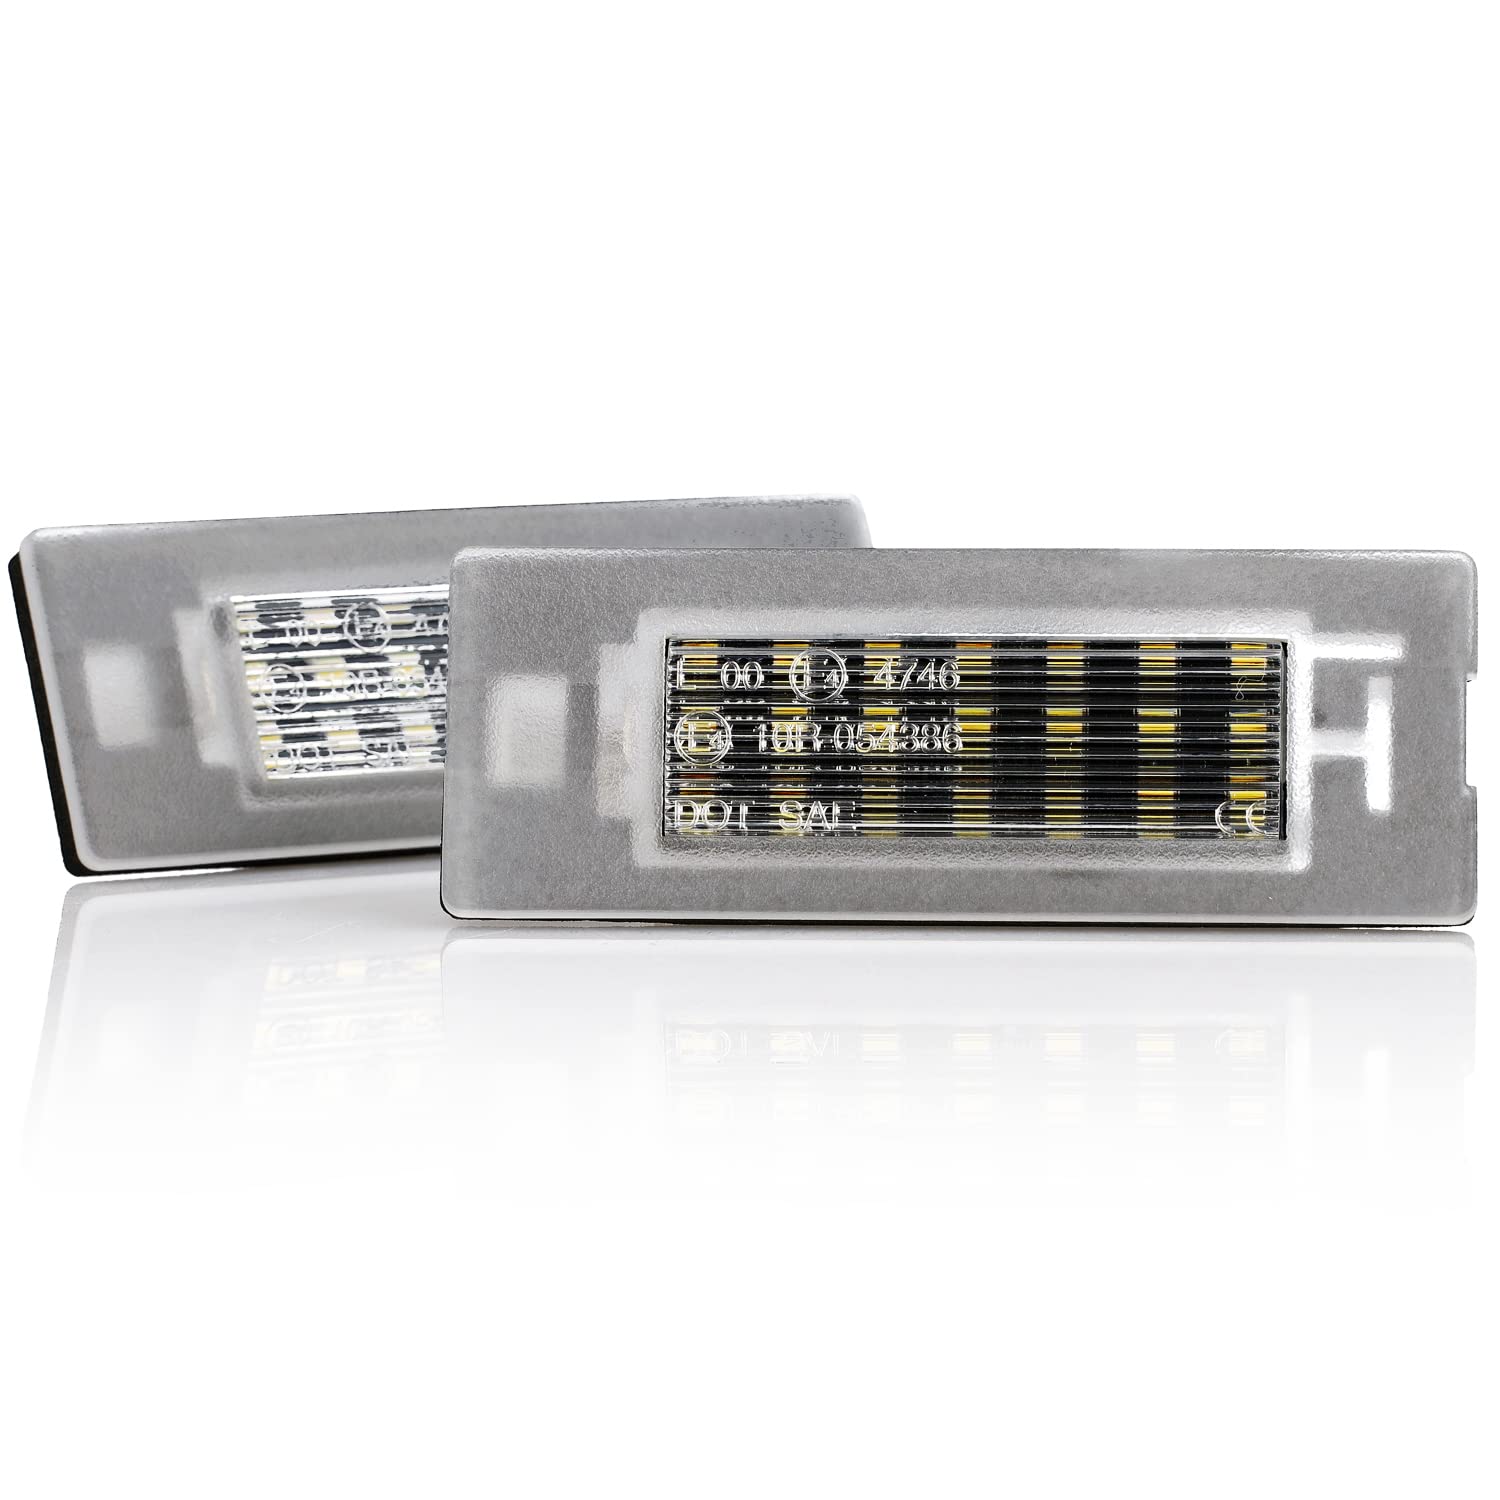 LIGHTDELUX LED Kennzeichenbeleuchtung Nummernschildbeleuchtung Canbus Plug&Play ersatz für Fiat Panda MK3, MK4 V-03441901 von LIGHTDELUX